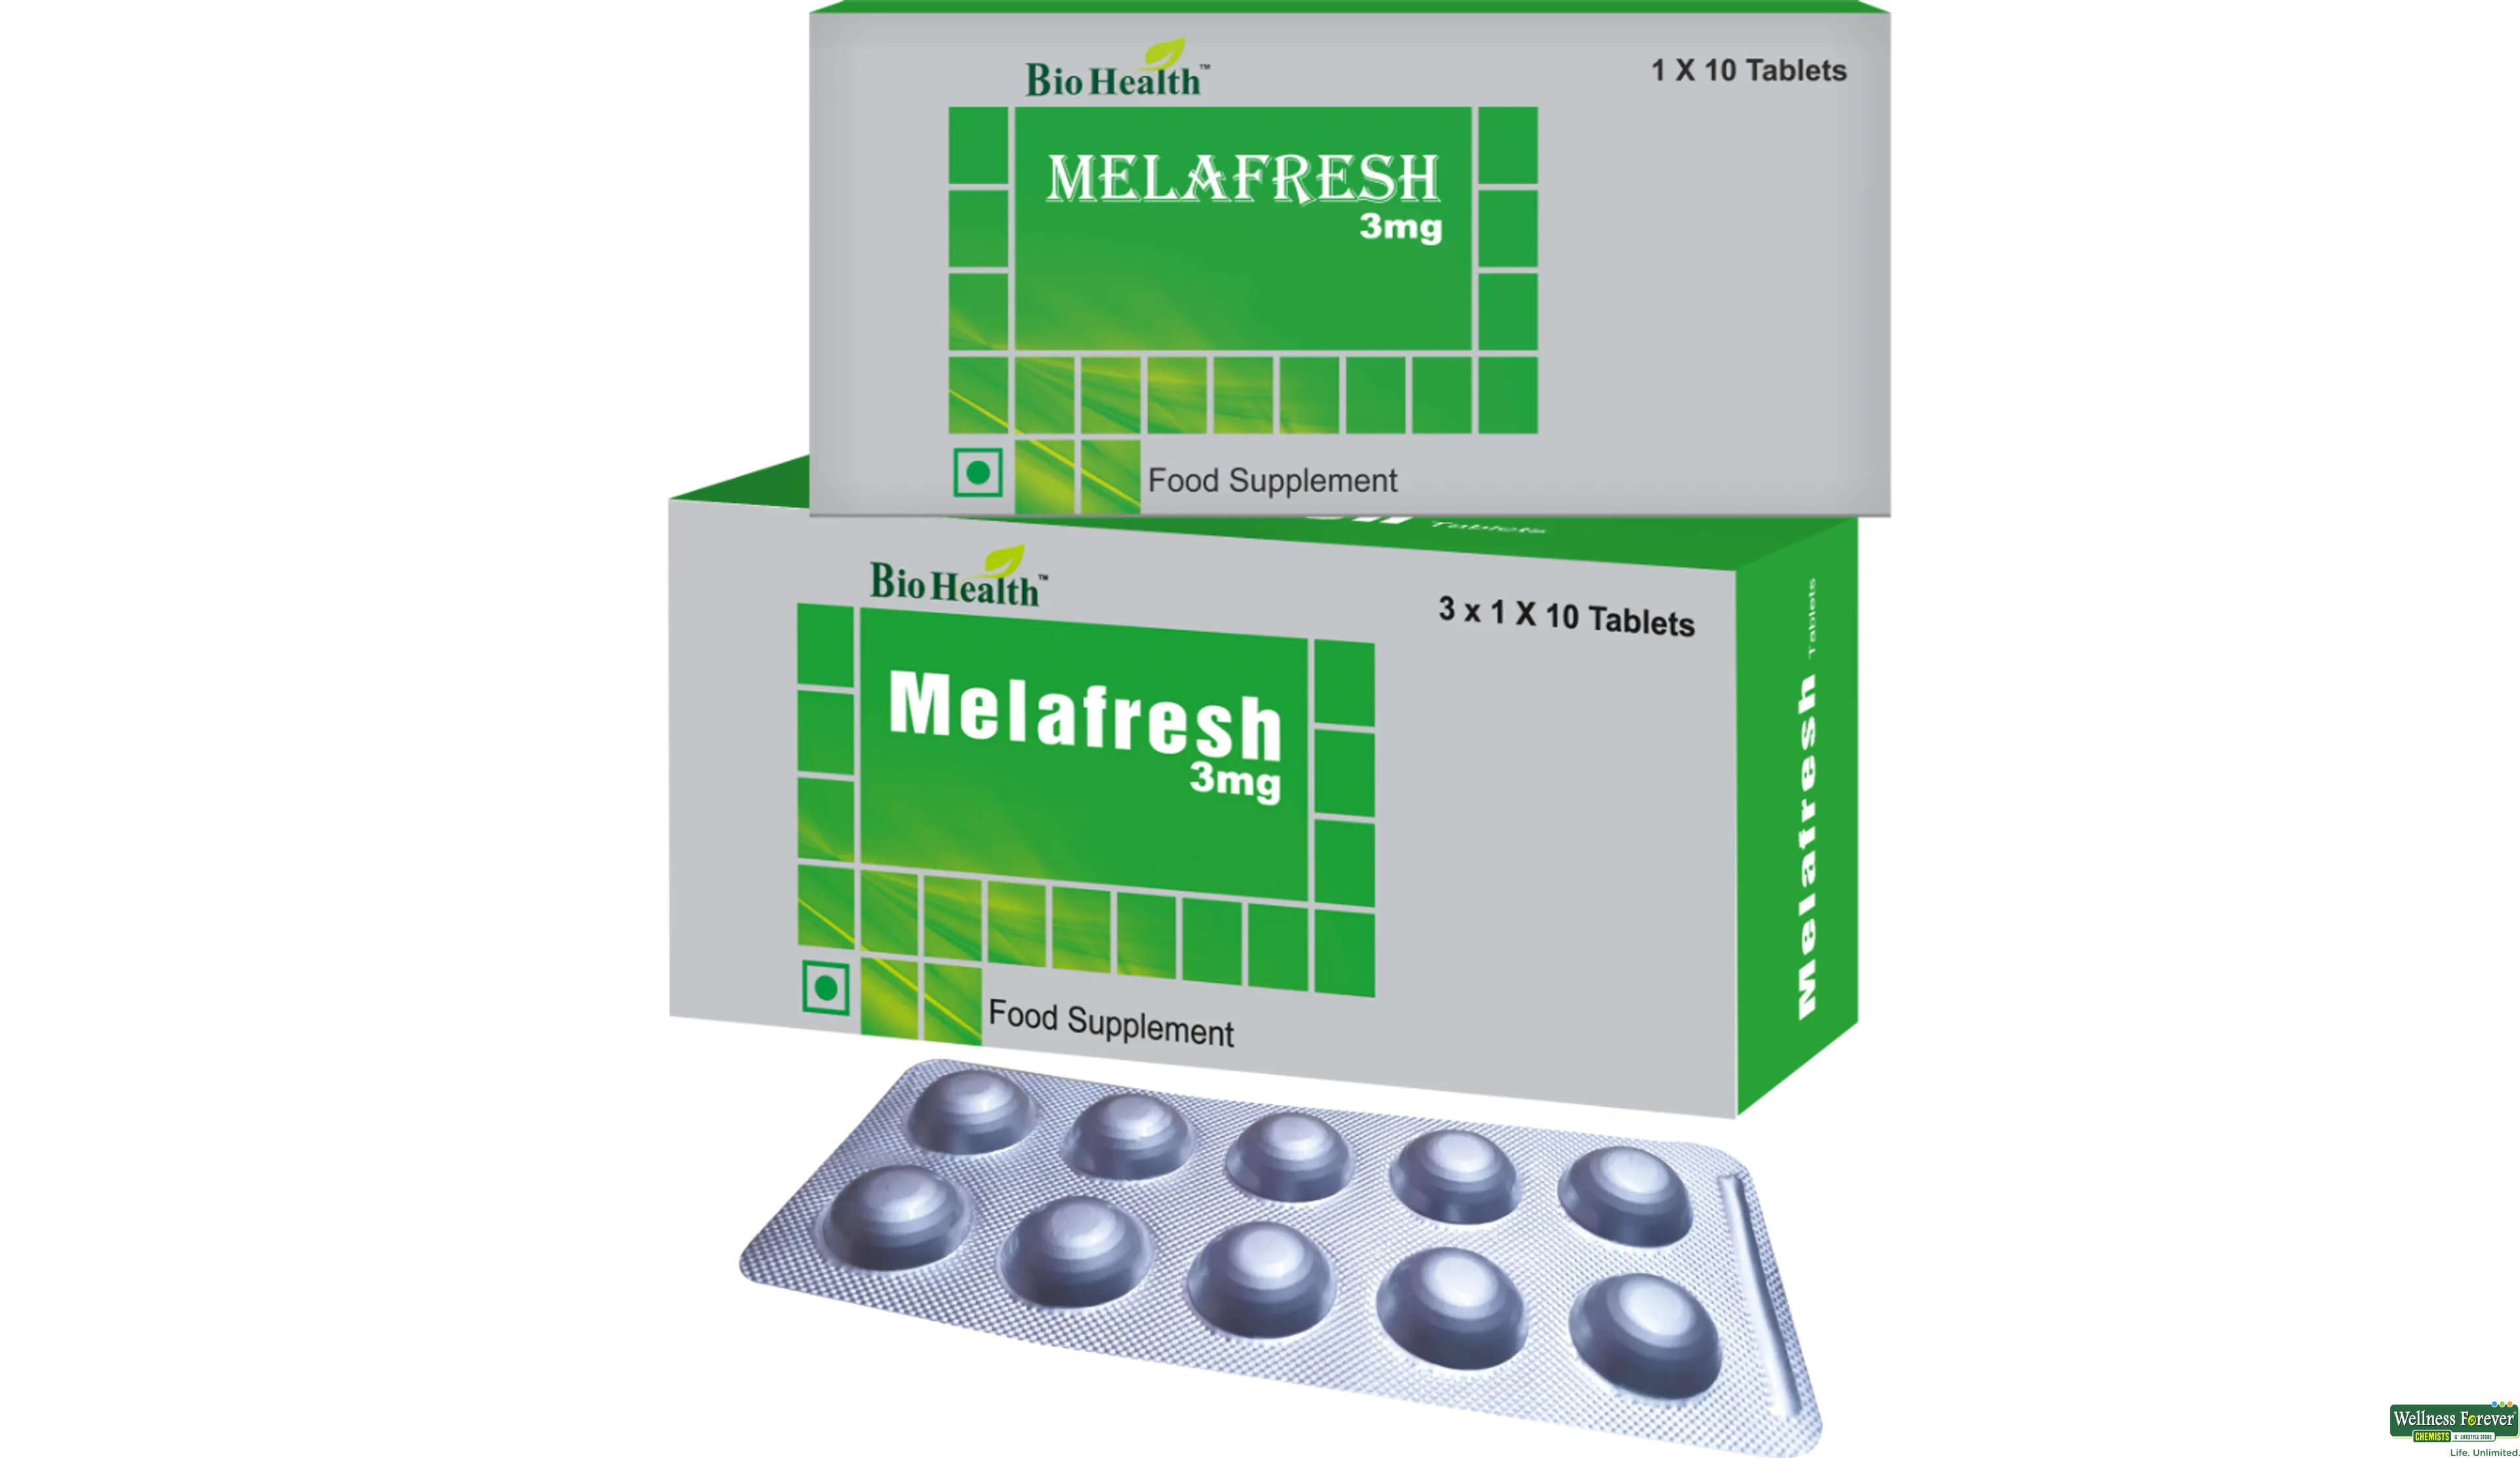 BIOHEALTH MELAFRESH 3MG 10TAB- 1, 10TAB, 